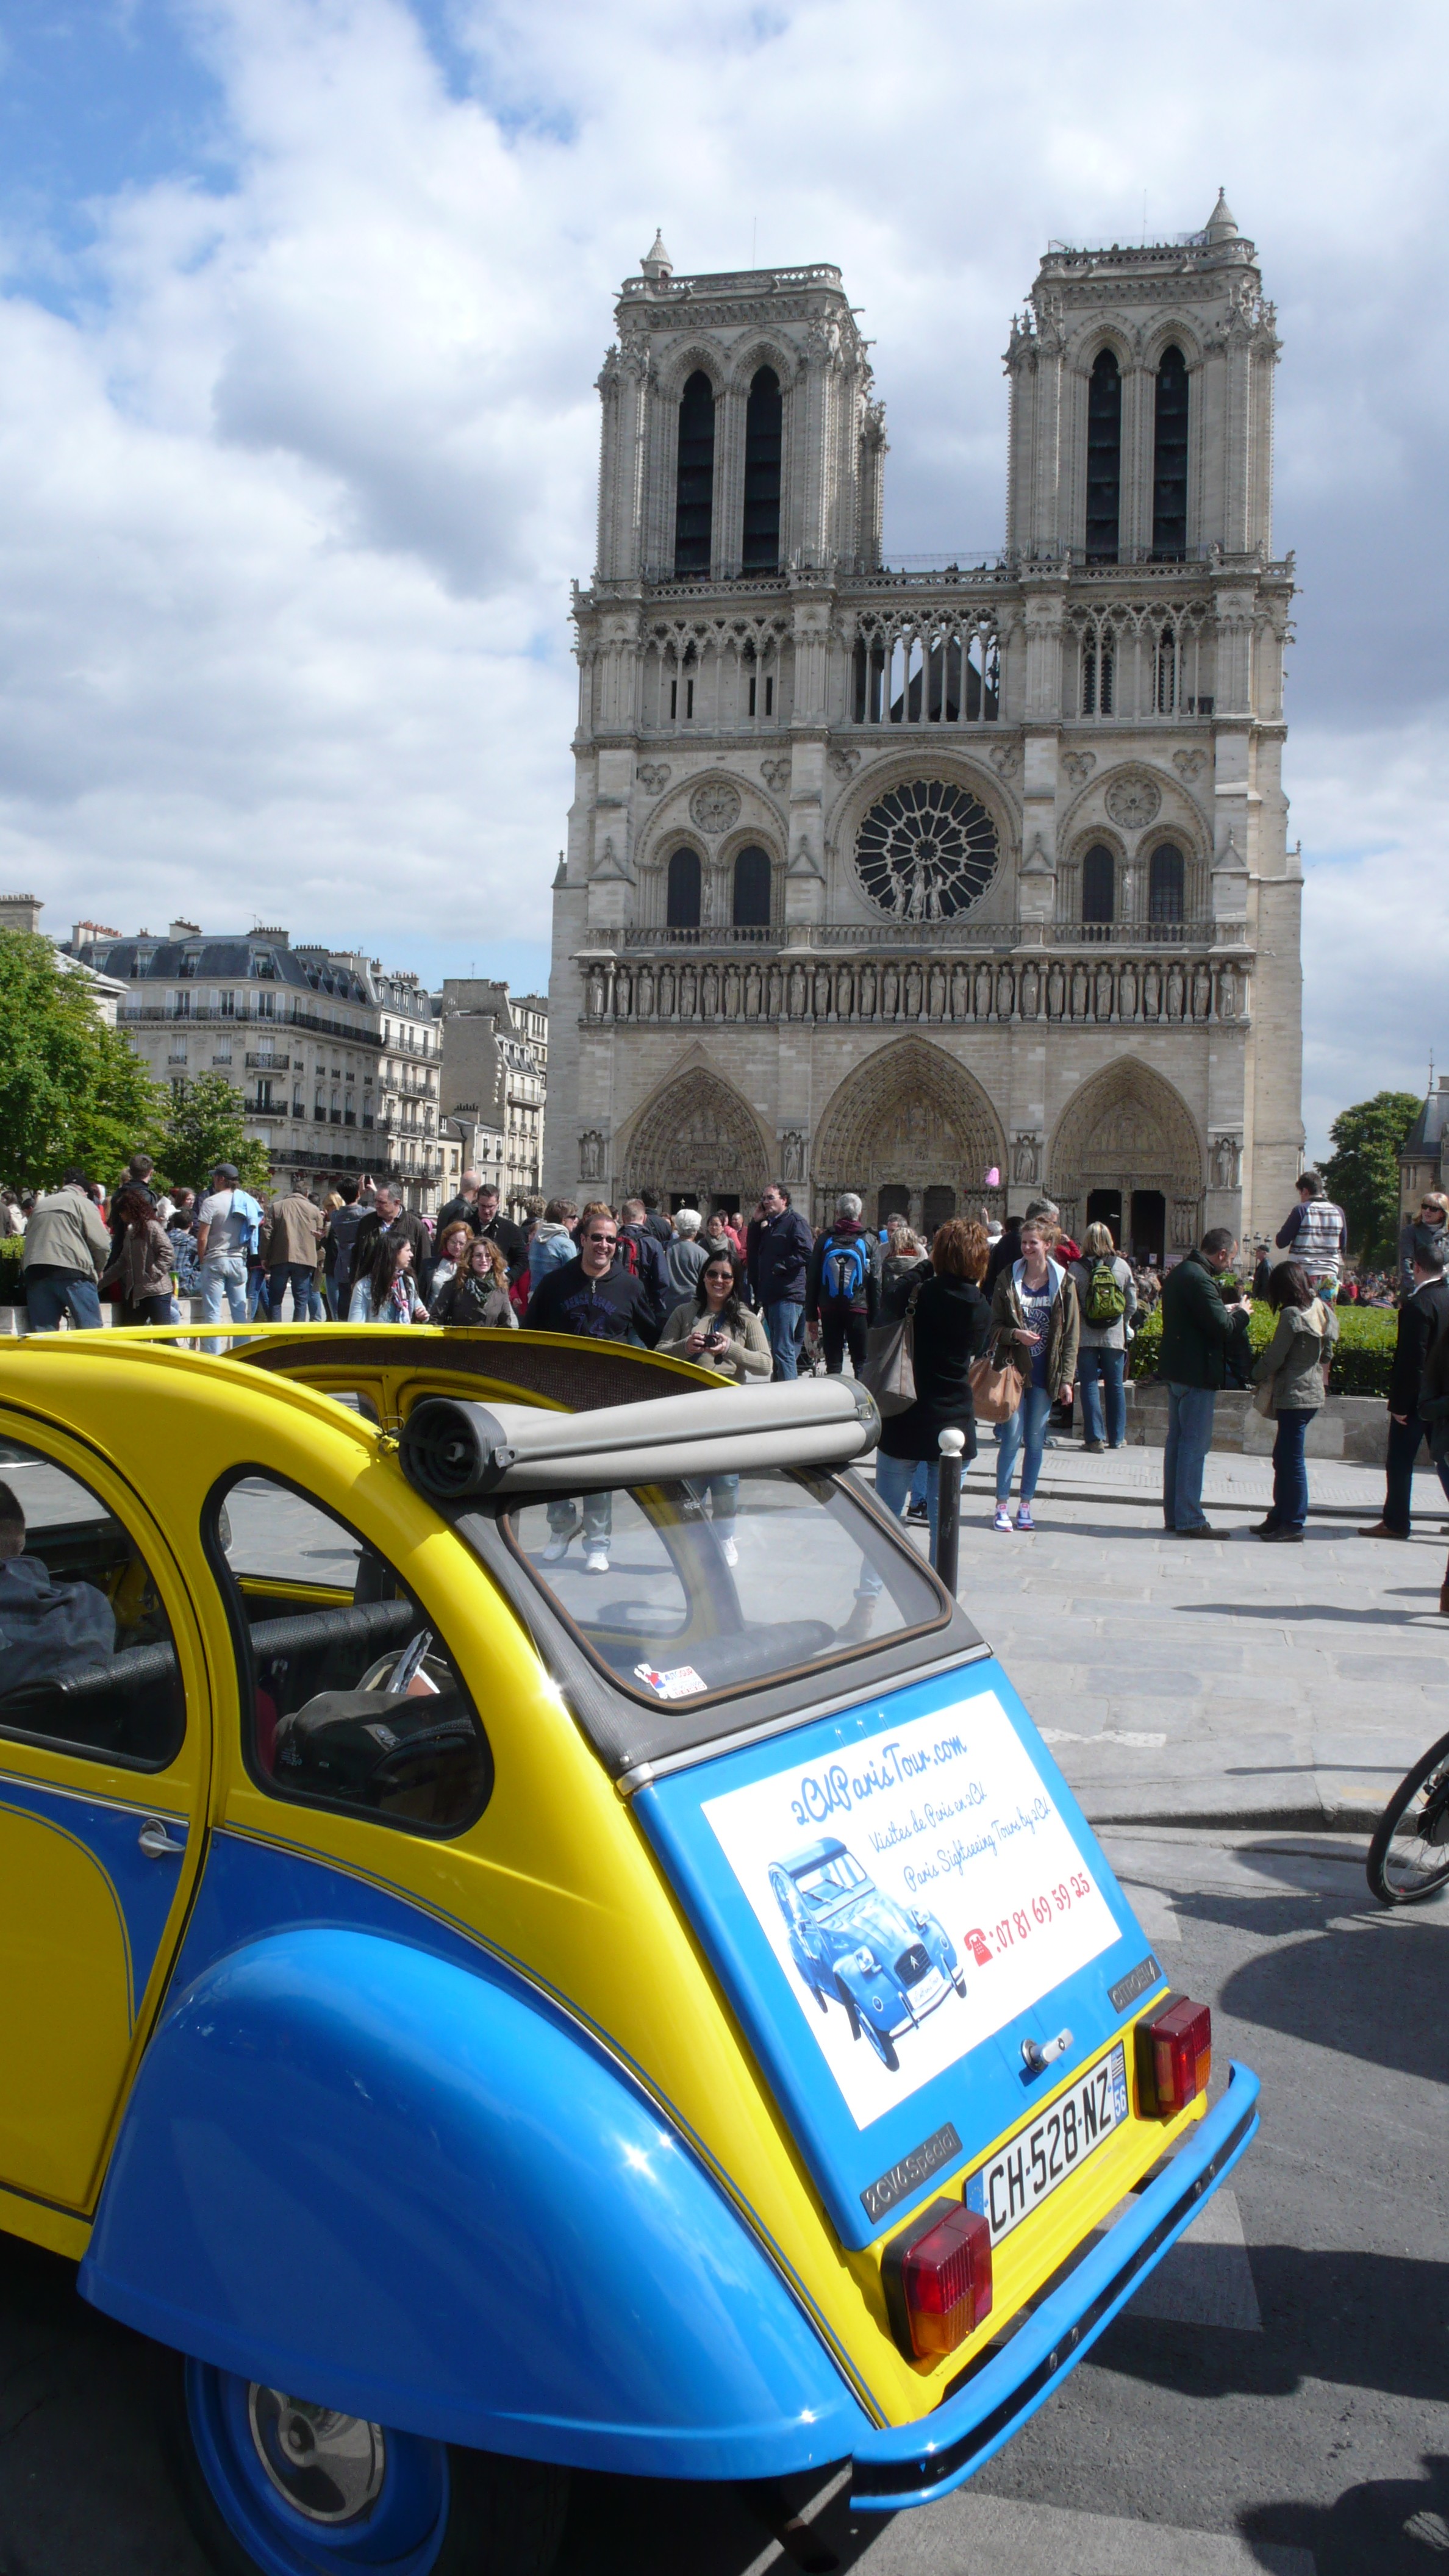 2CVParisTour : Balades en 2CV à Paris! Notre Dame et la 2CV toit ouvert